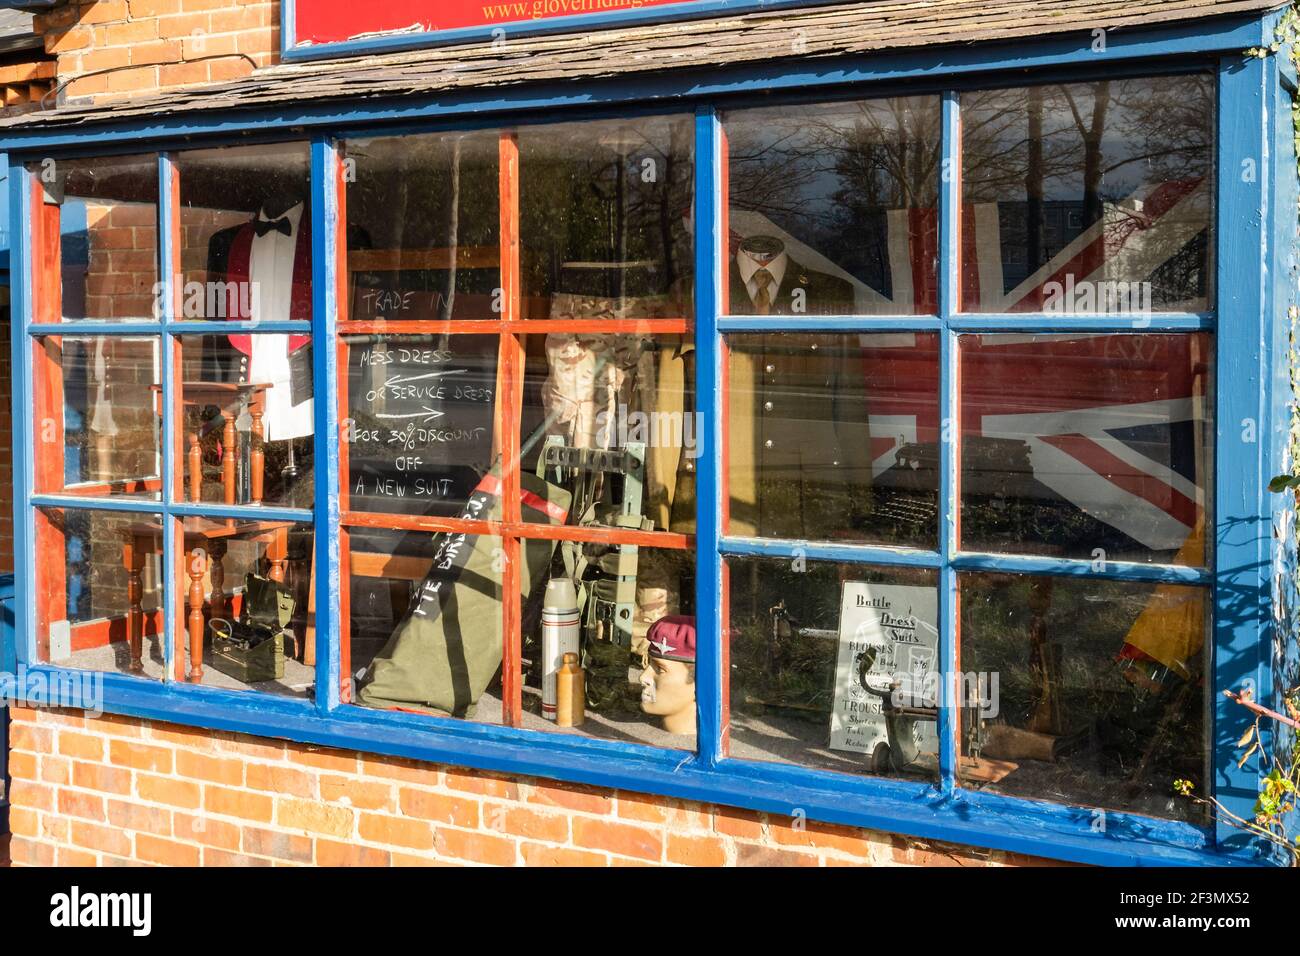 Glover & Riding Geschäft für militärische und zivile Schneider in Aldershot, Hampshire, England, Großbritannien. Schaufenster mit Armee Uniformen und Ausrüstung. Stockfoto